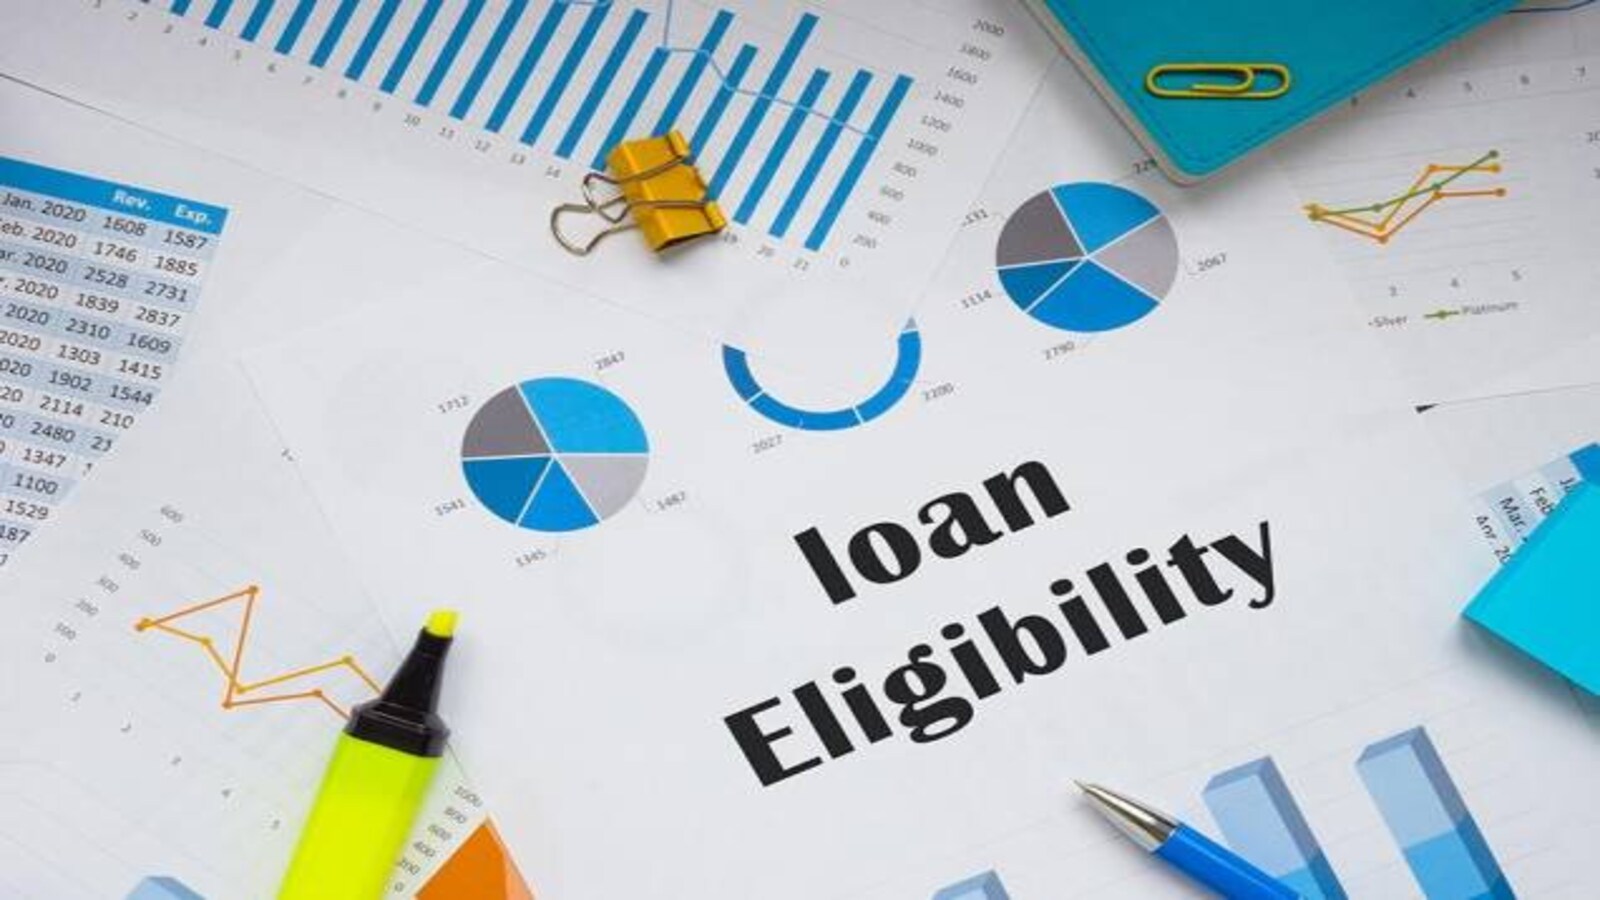 Loan eligibility criteria